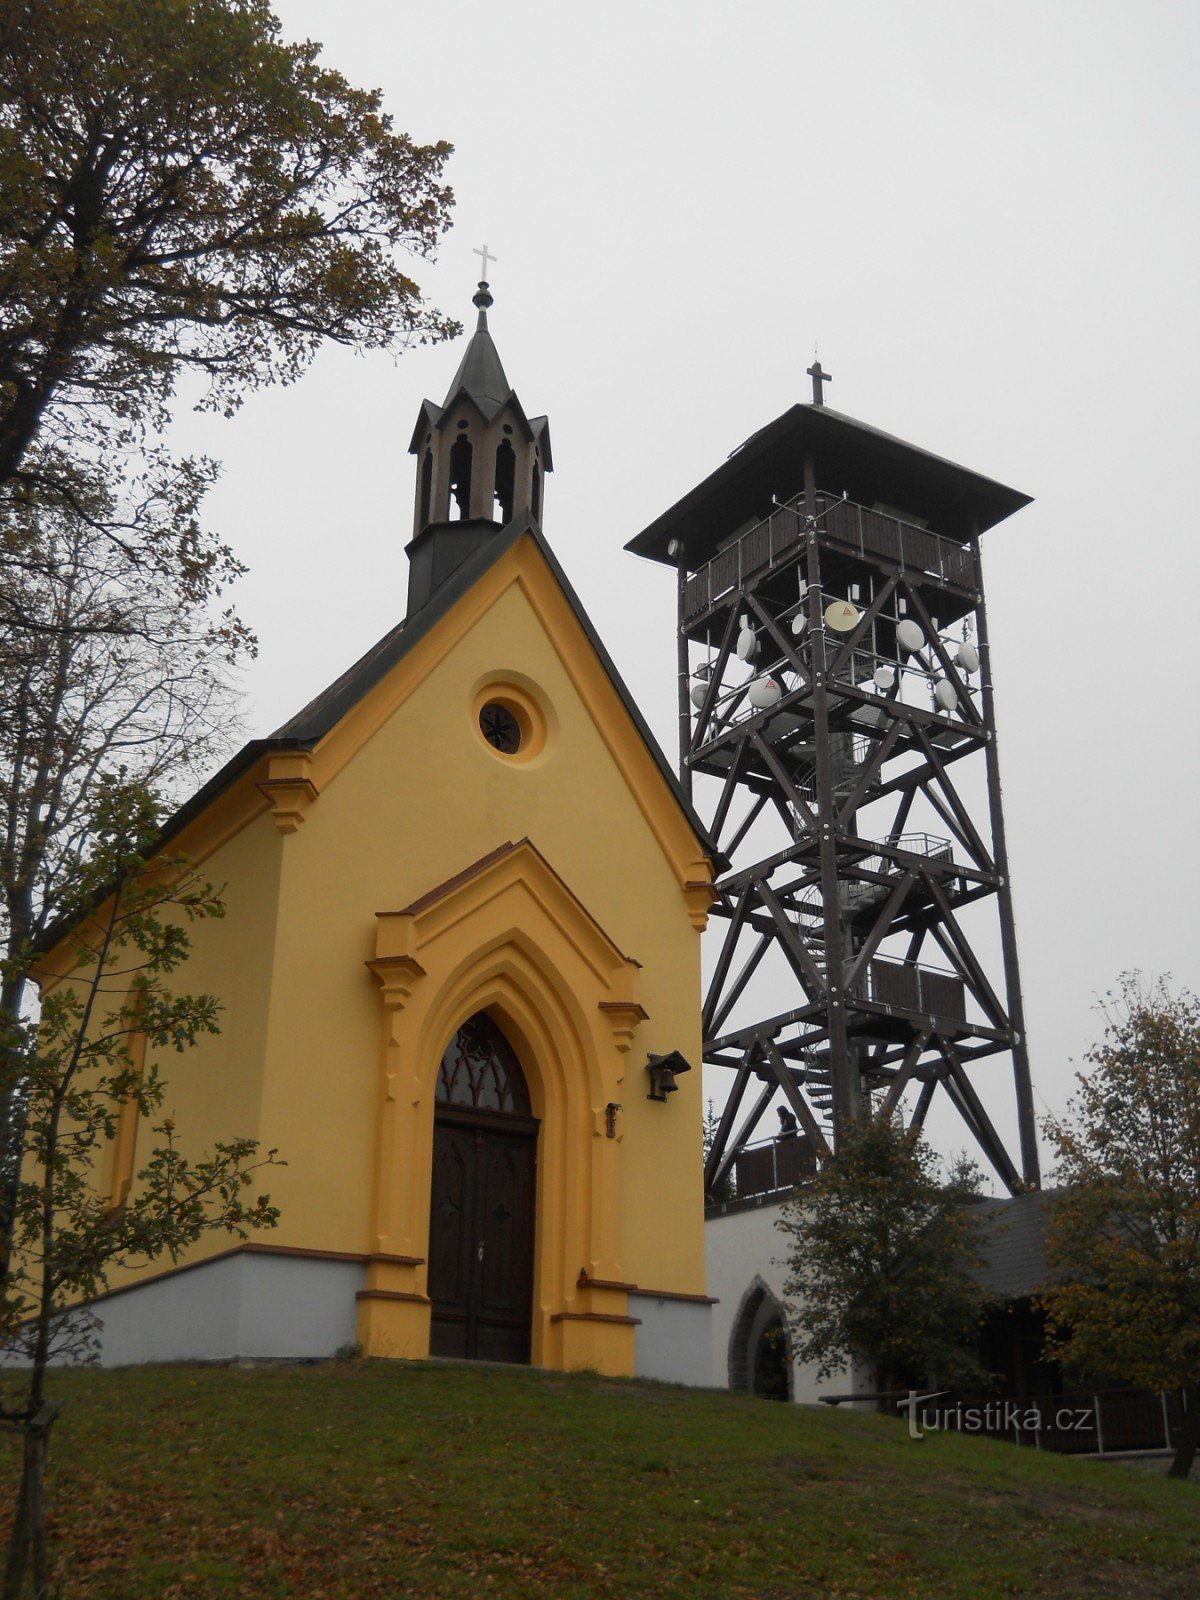 Dlažov - Torre de vigia de Markéta e capela de S. Margarida